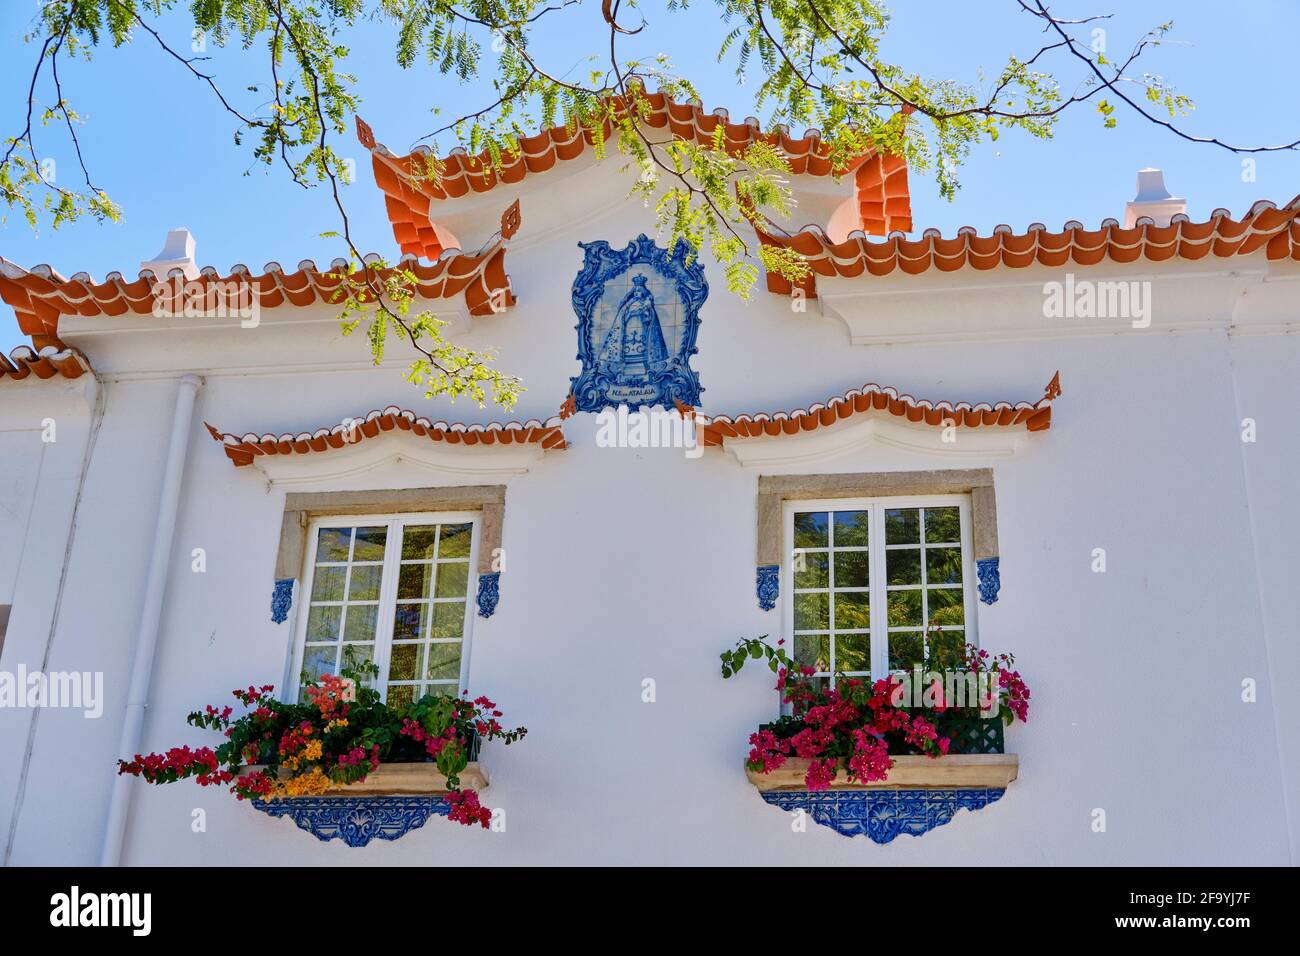 Fenêtres d'une maison traditionnelle. Alcochete, Portugal Banque D'Images